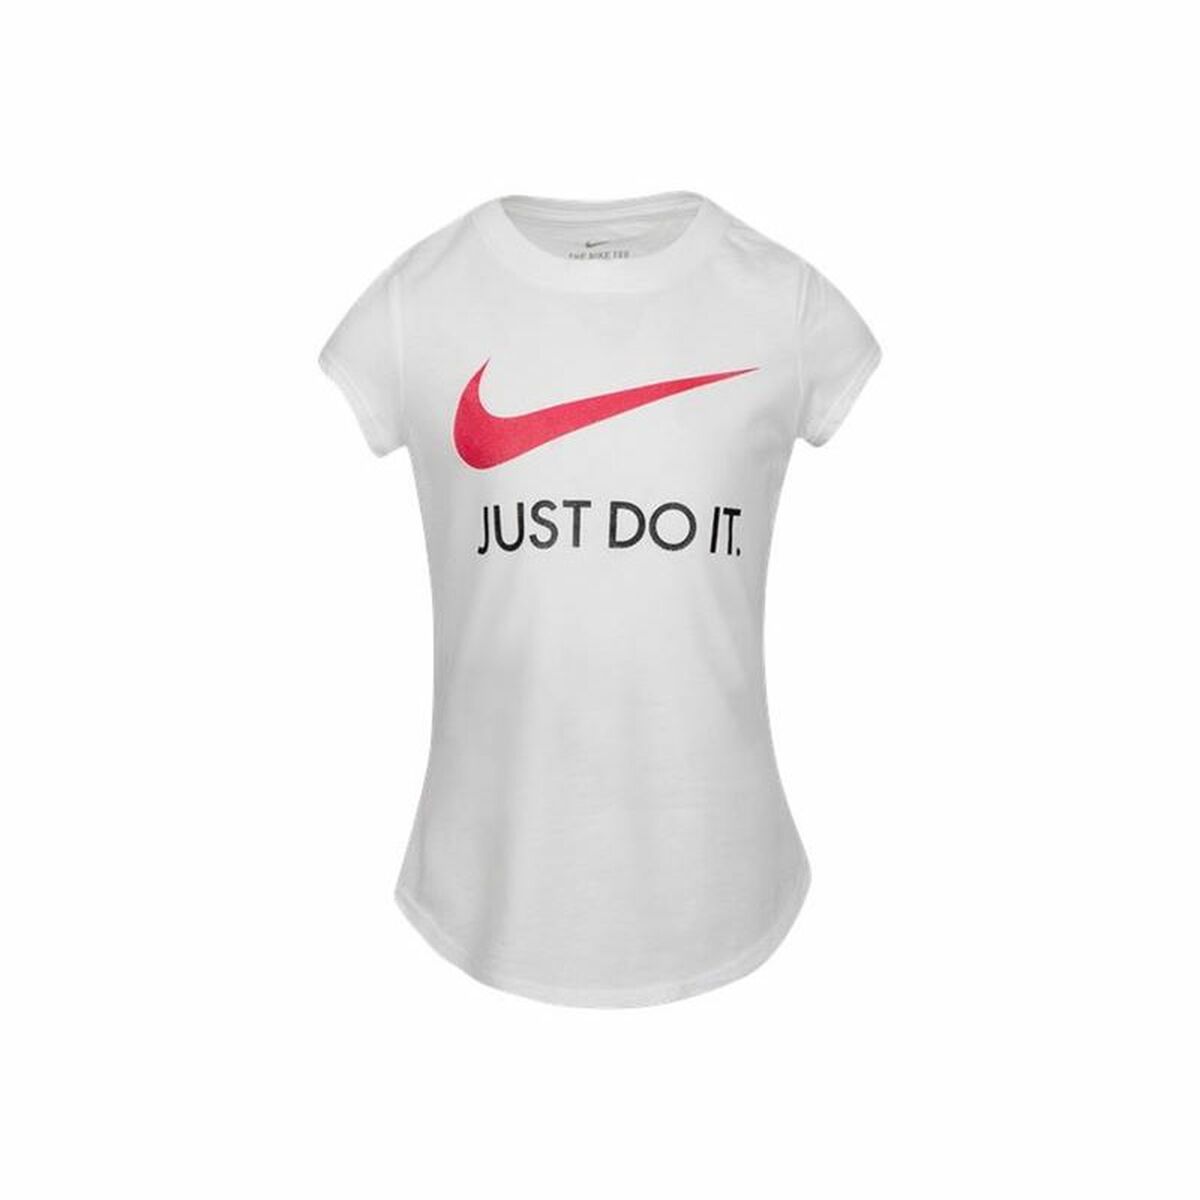 Osta tuote Lasten Lyhythihainen paita Nike Swoosh JDI Valkoinen (Koko: 5 vuotta) verkkokaupastamme Korhone: Urheilu & Vapaa-aika 10% alennuksella koodilla KORHONE